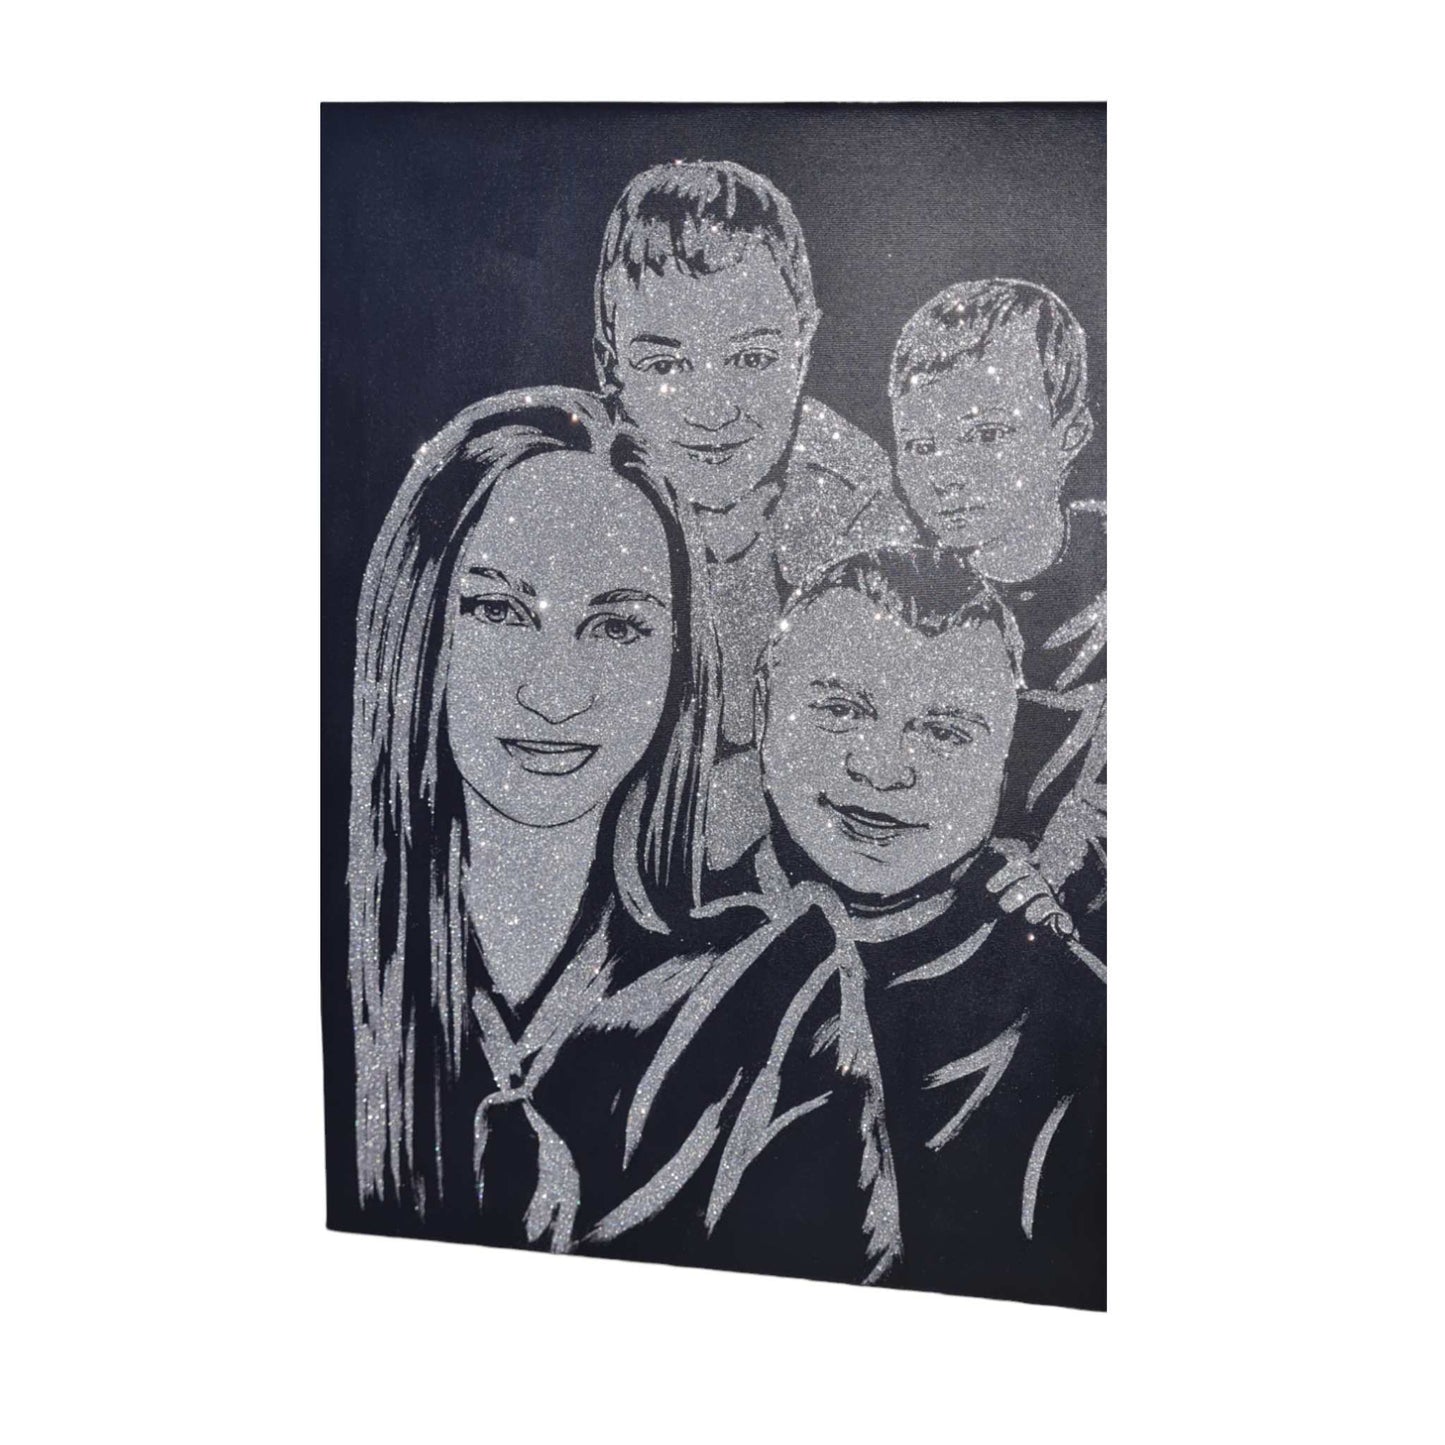 Tablou cu sclipici de familie, pictat manual cu sclipici argintiu si personalizat dupa poza clientului pe panza canvas.